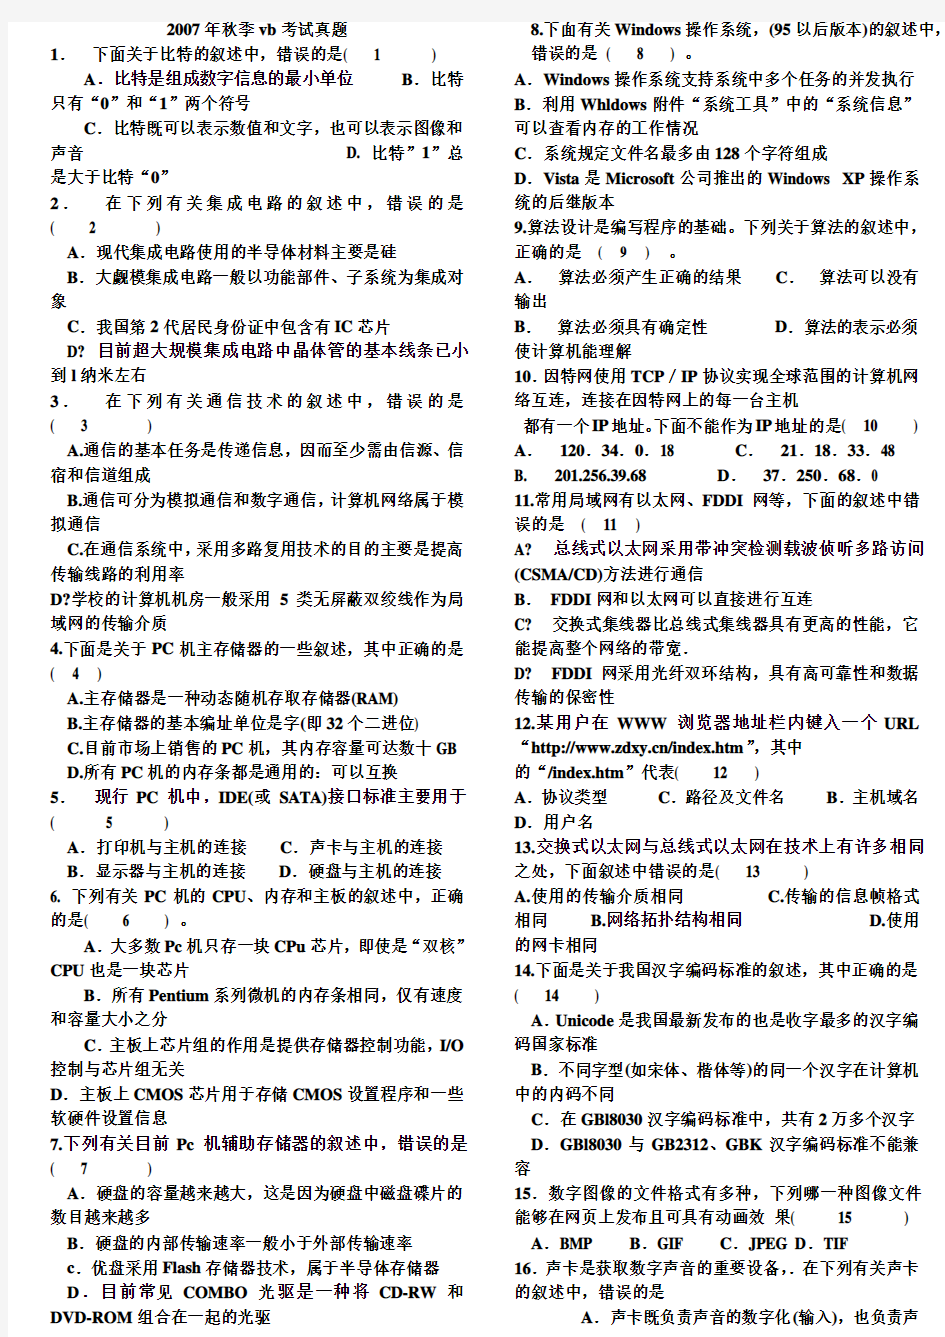 江苏省计算机二级VB考试真题及参考答案2007年秋至2011年春